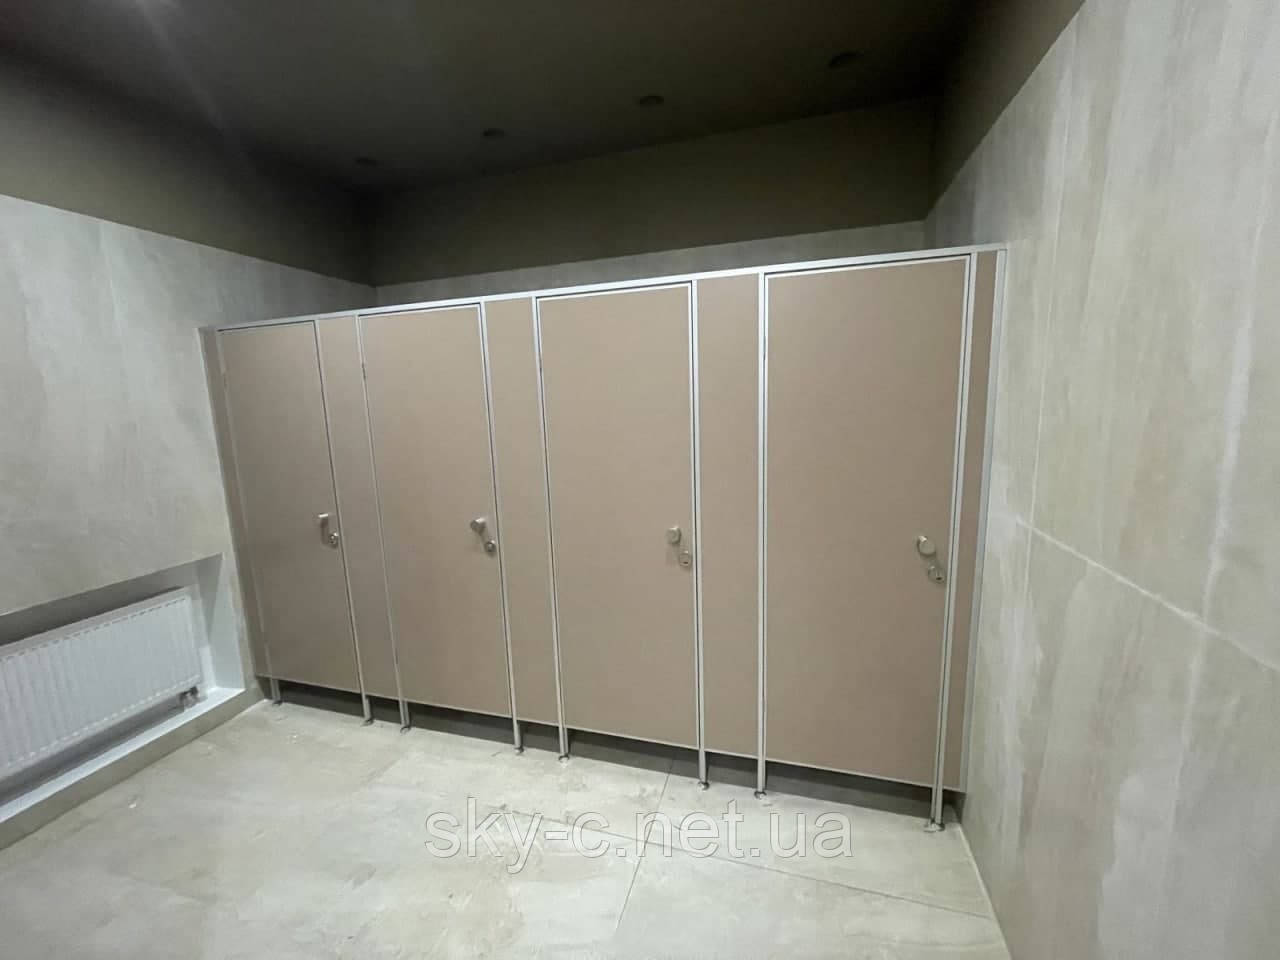 Туалетні перегородки 18 мм, 25 мм, різні види фурнітури, виготовлення і монтаж, фото 1